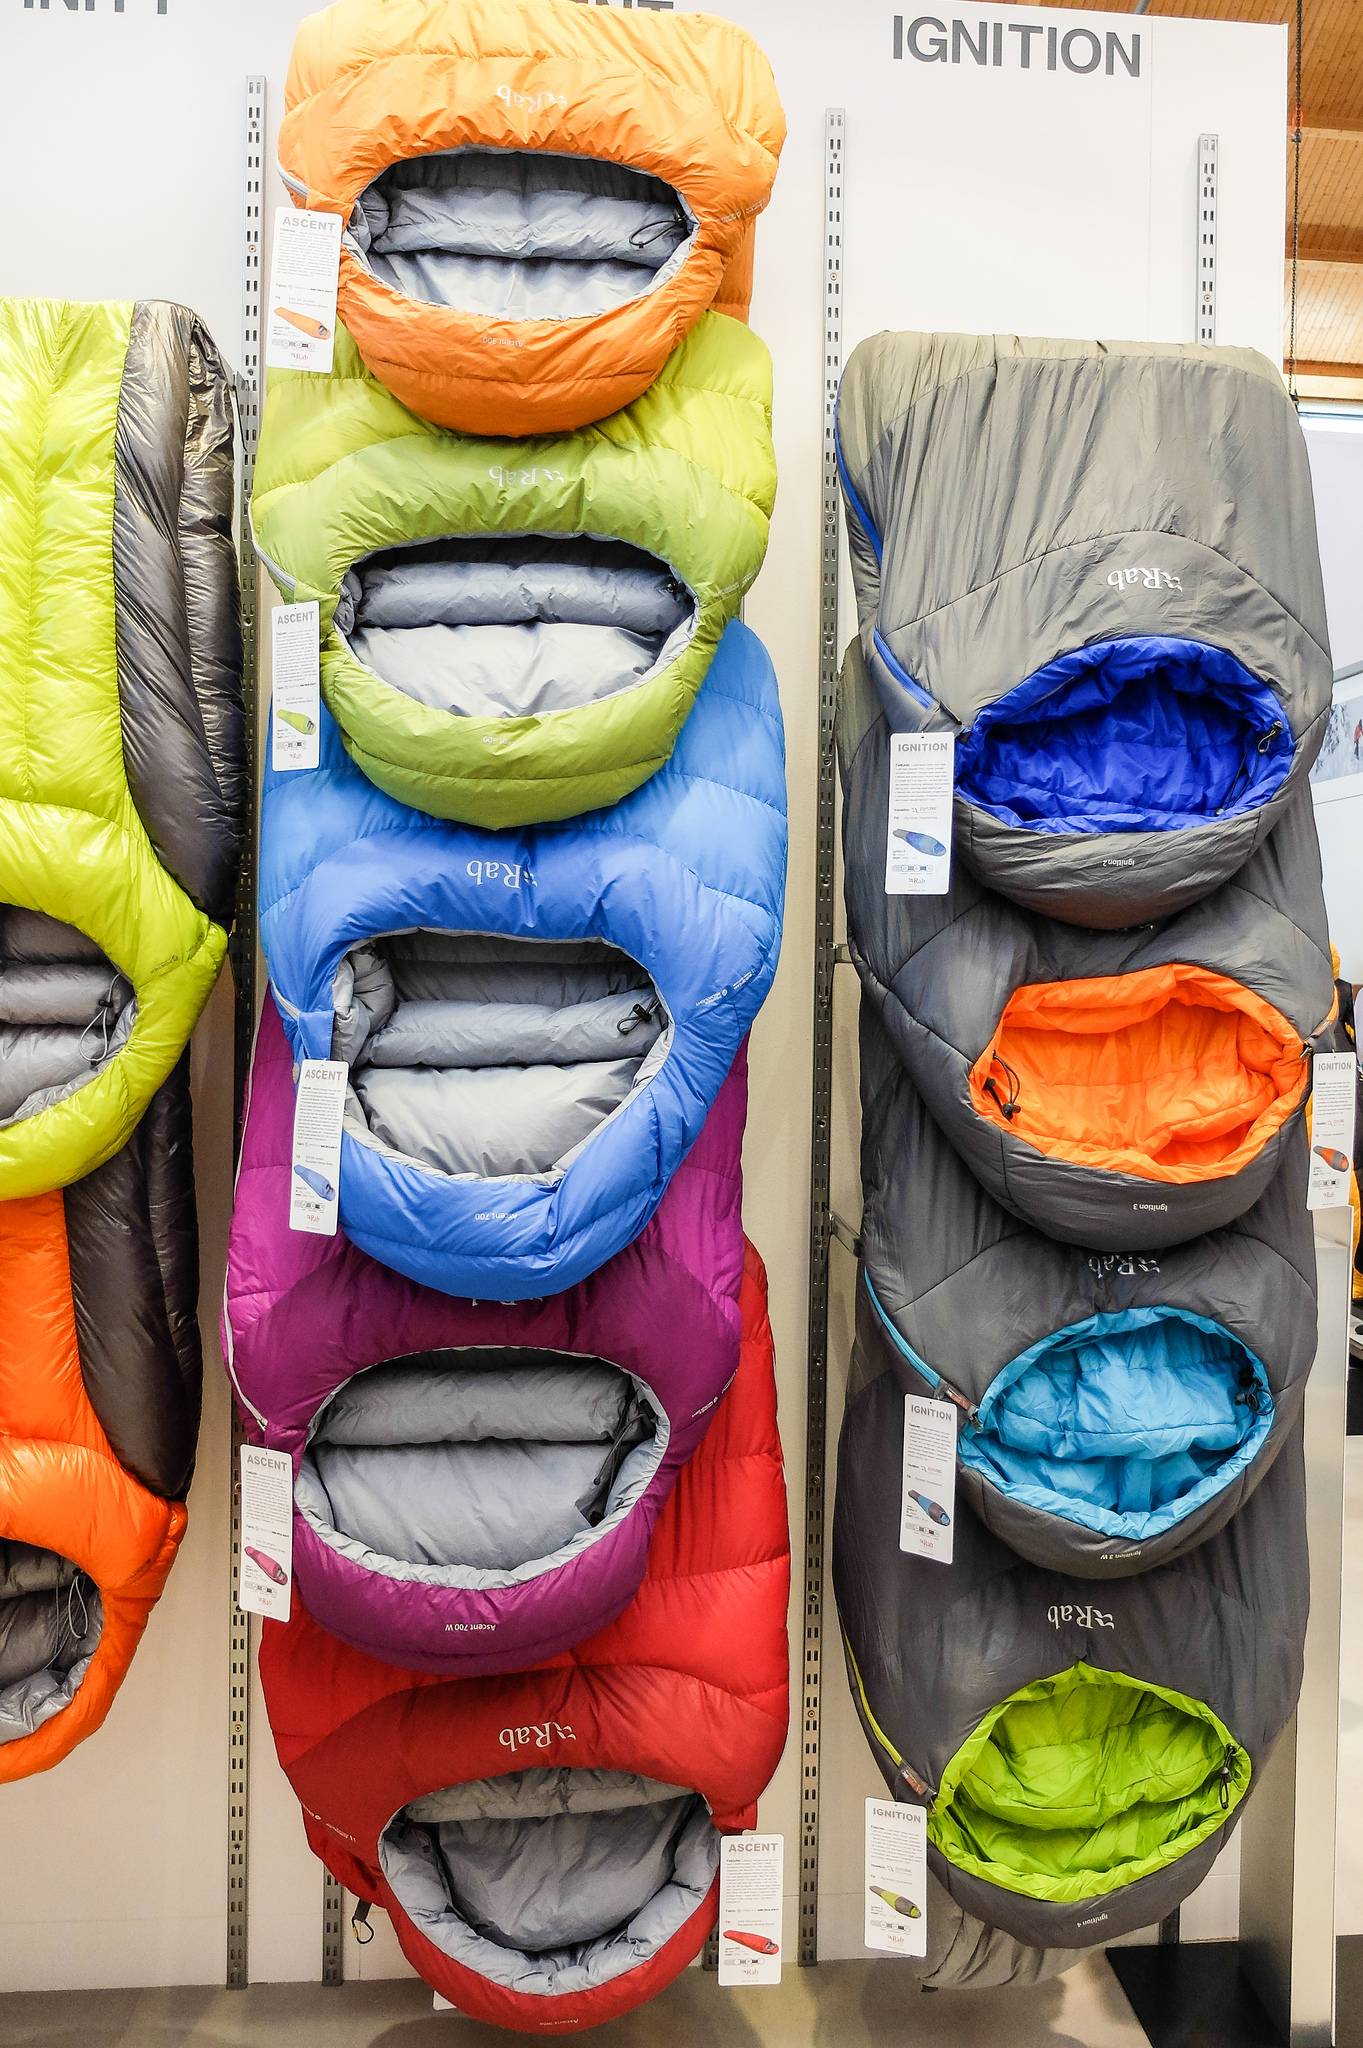 Cómo elegir el saco de dormir correcto?